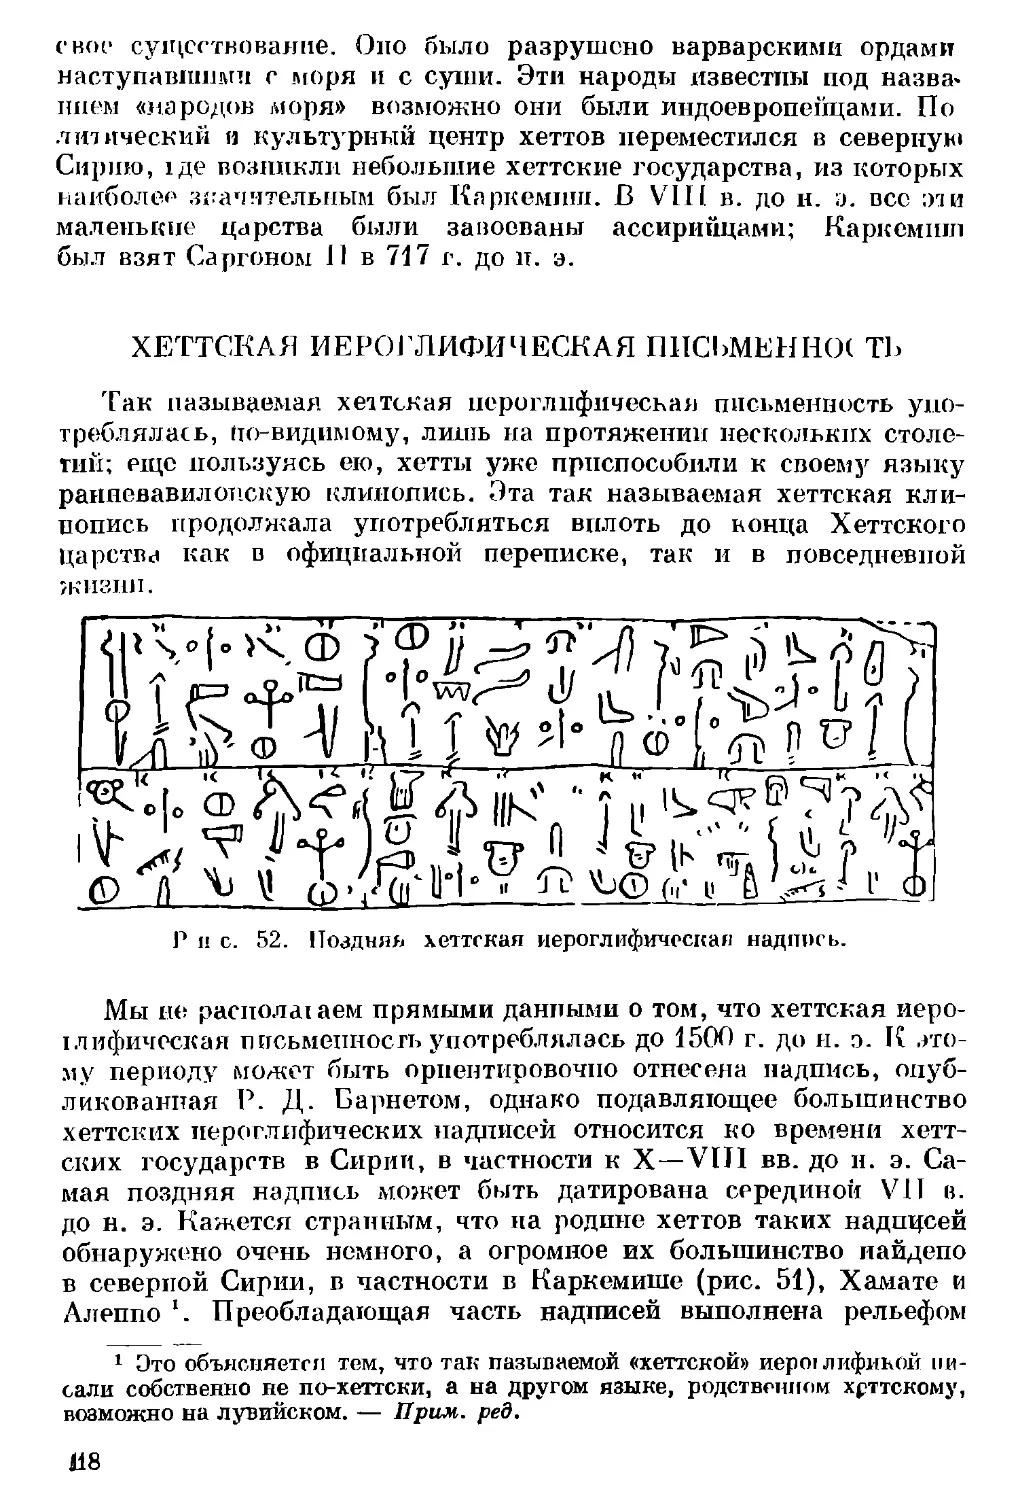 Хеттская иероглифическая письменность